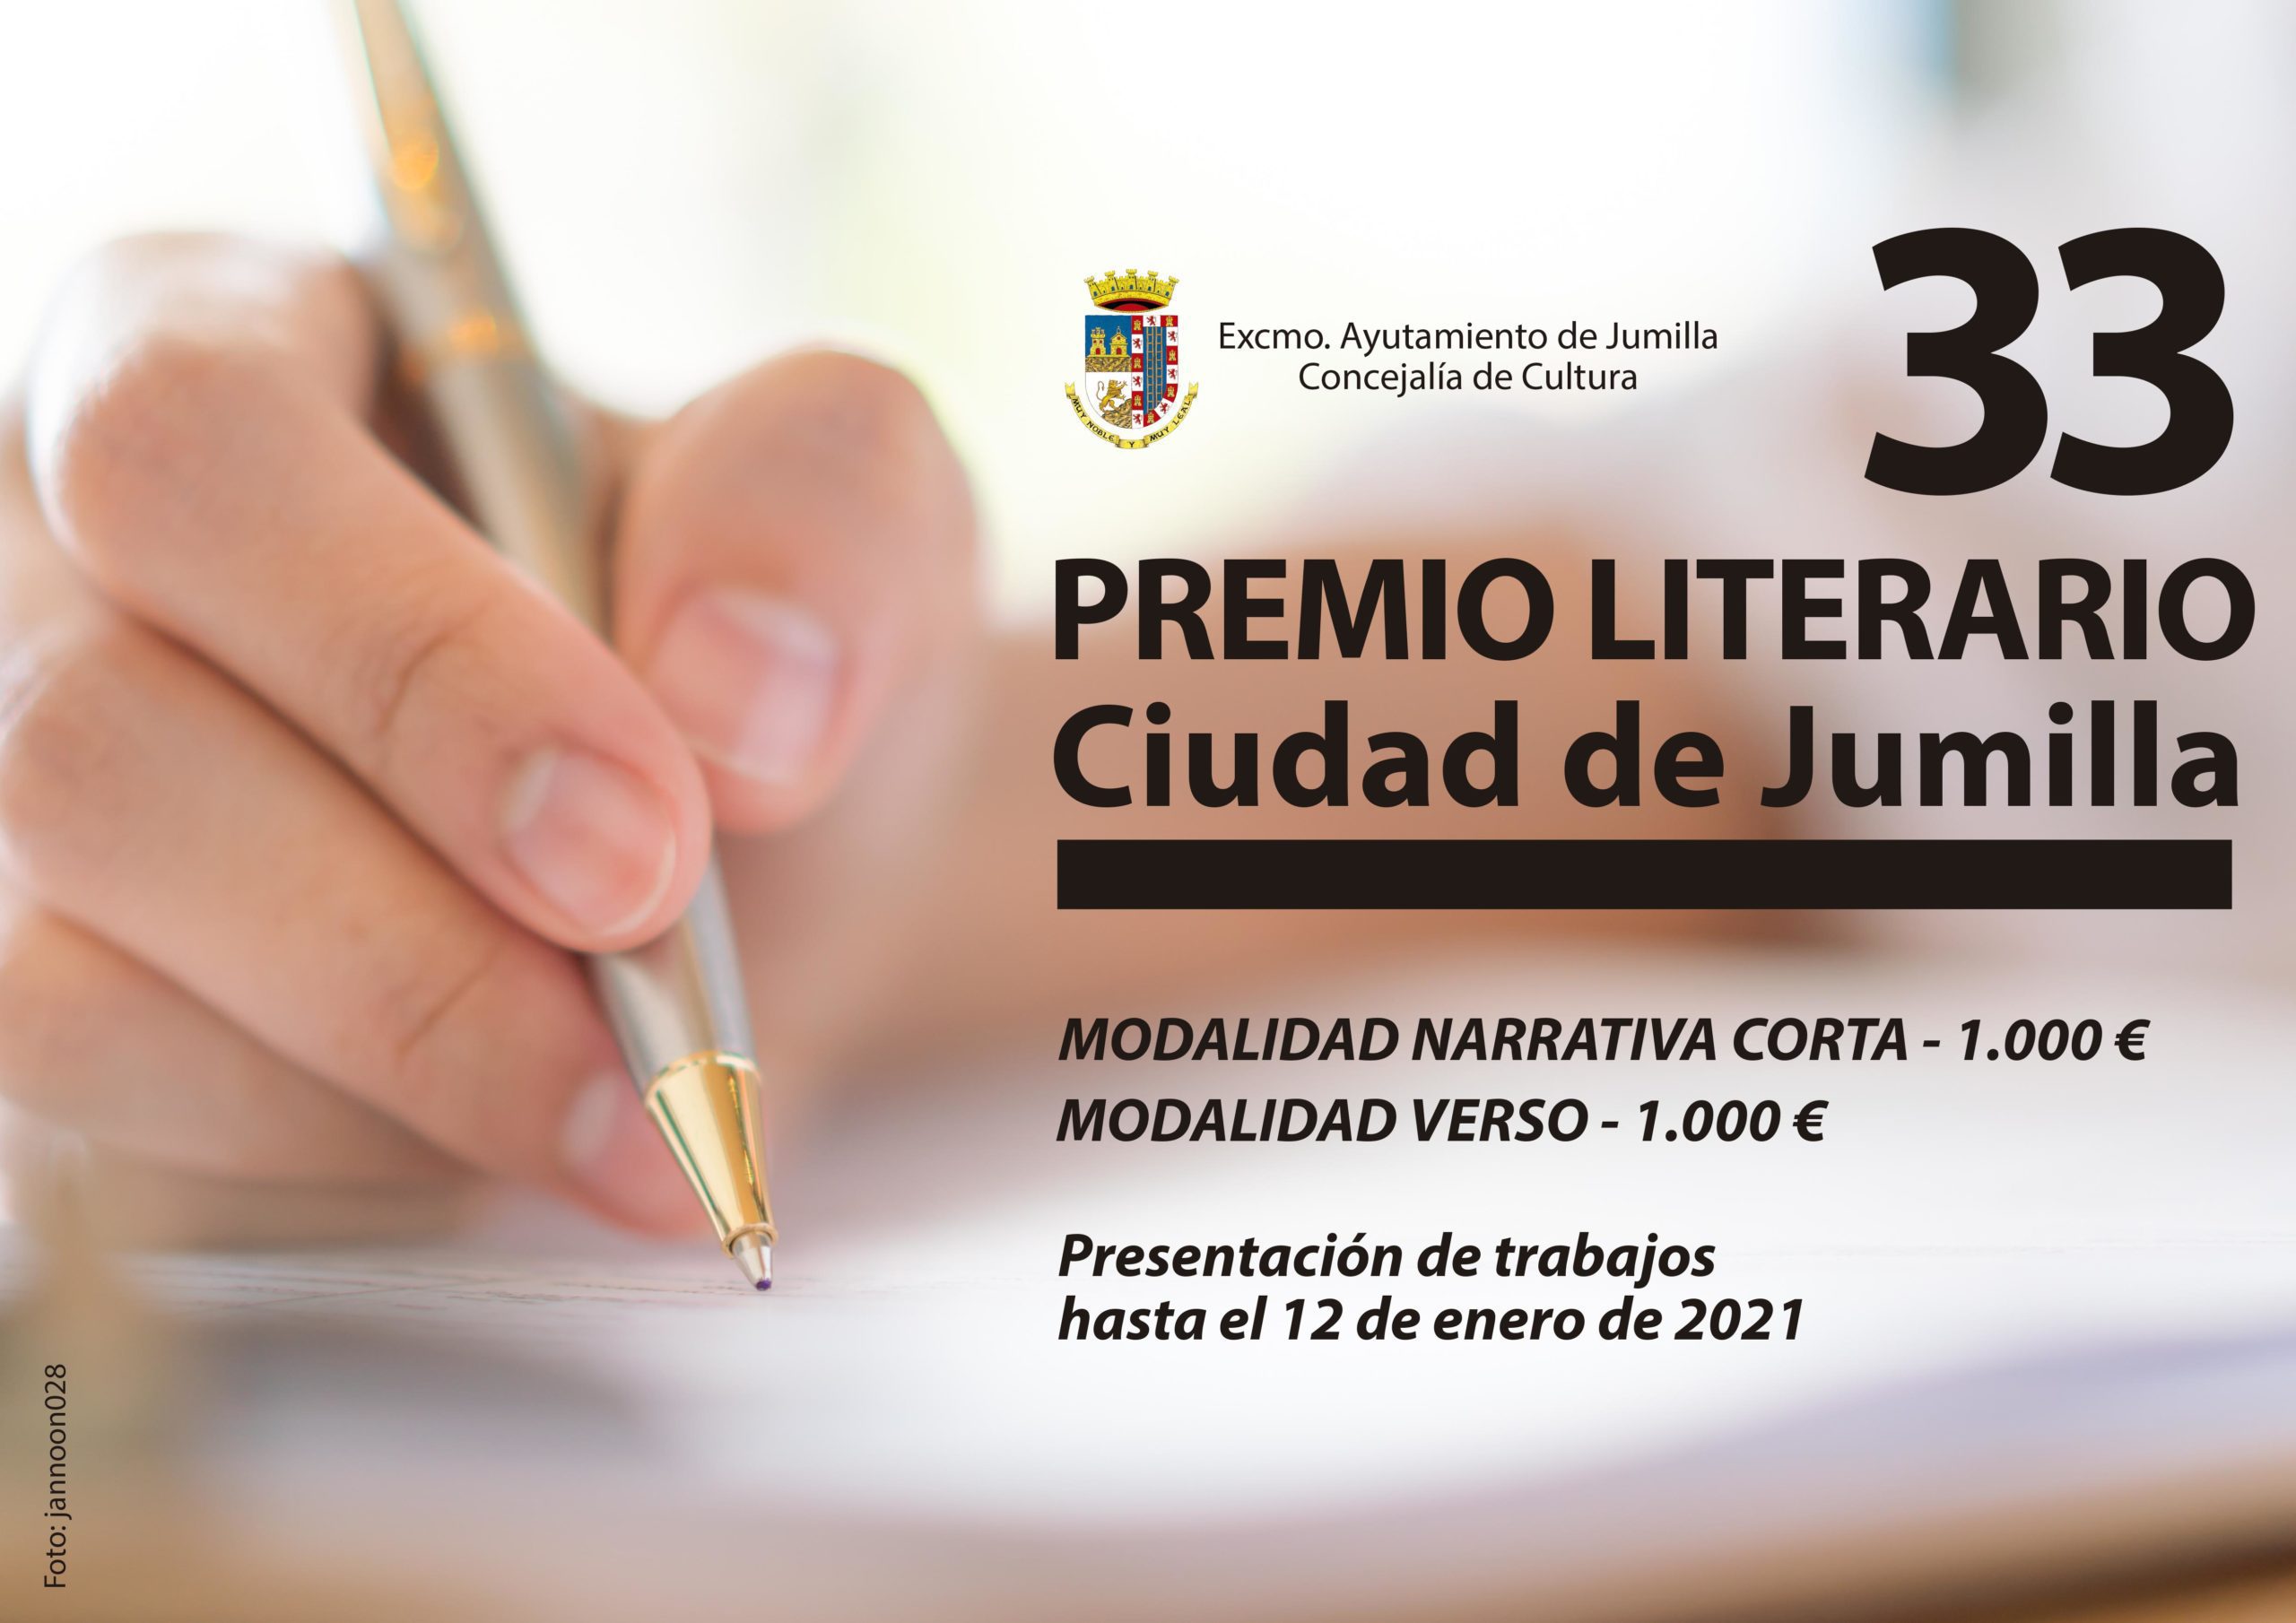 El XXXIII Premio Literario Ciudad de Jumilla bate el récord en recepción de obras